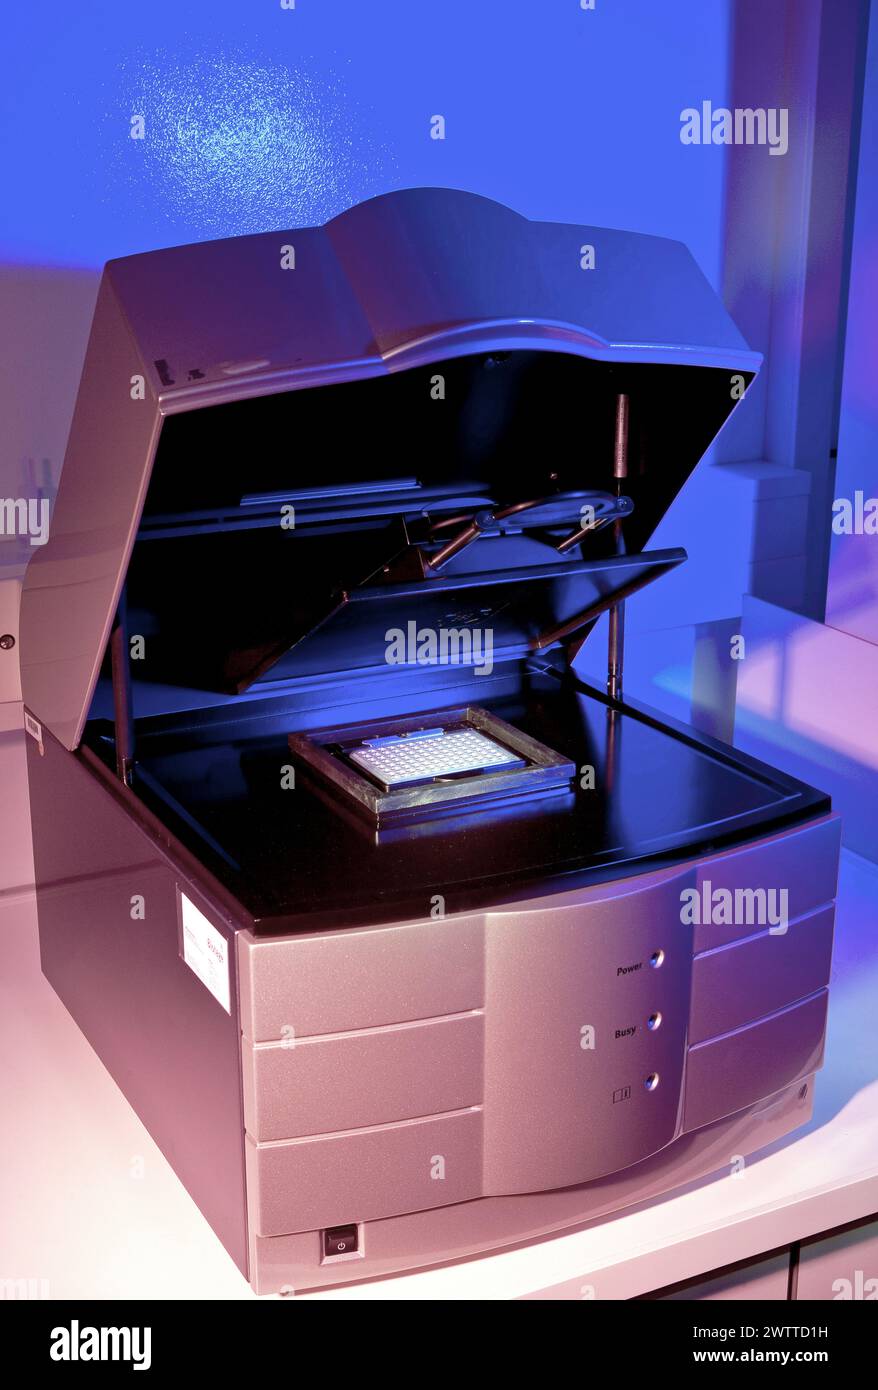 Une imprimante moderne sous un éclairage violet Banque D'Images